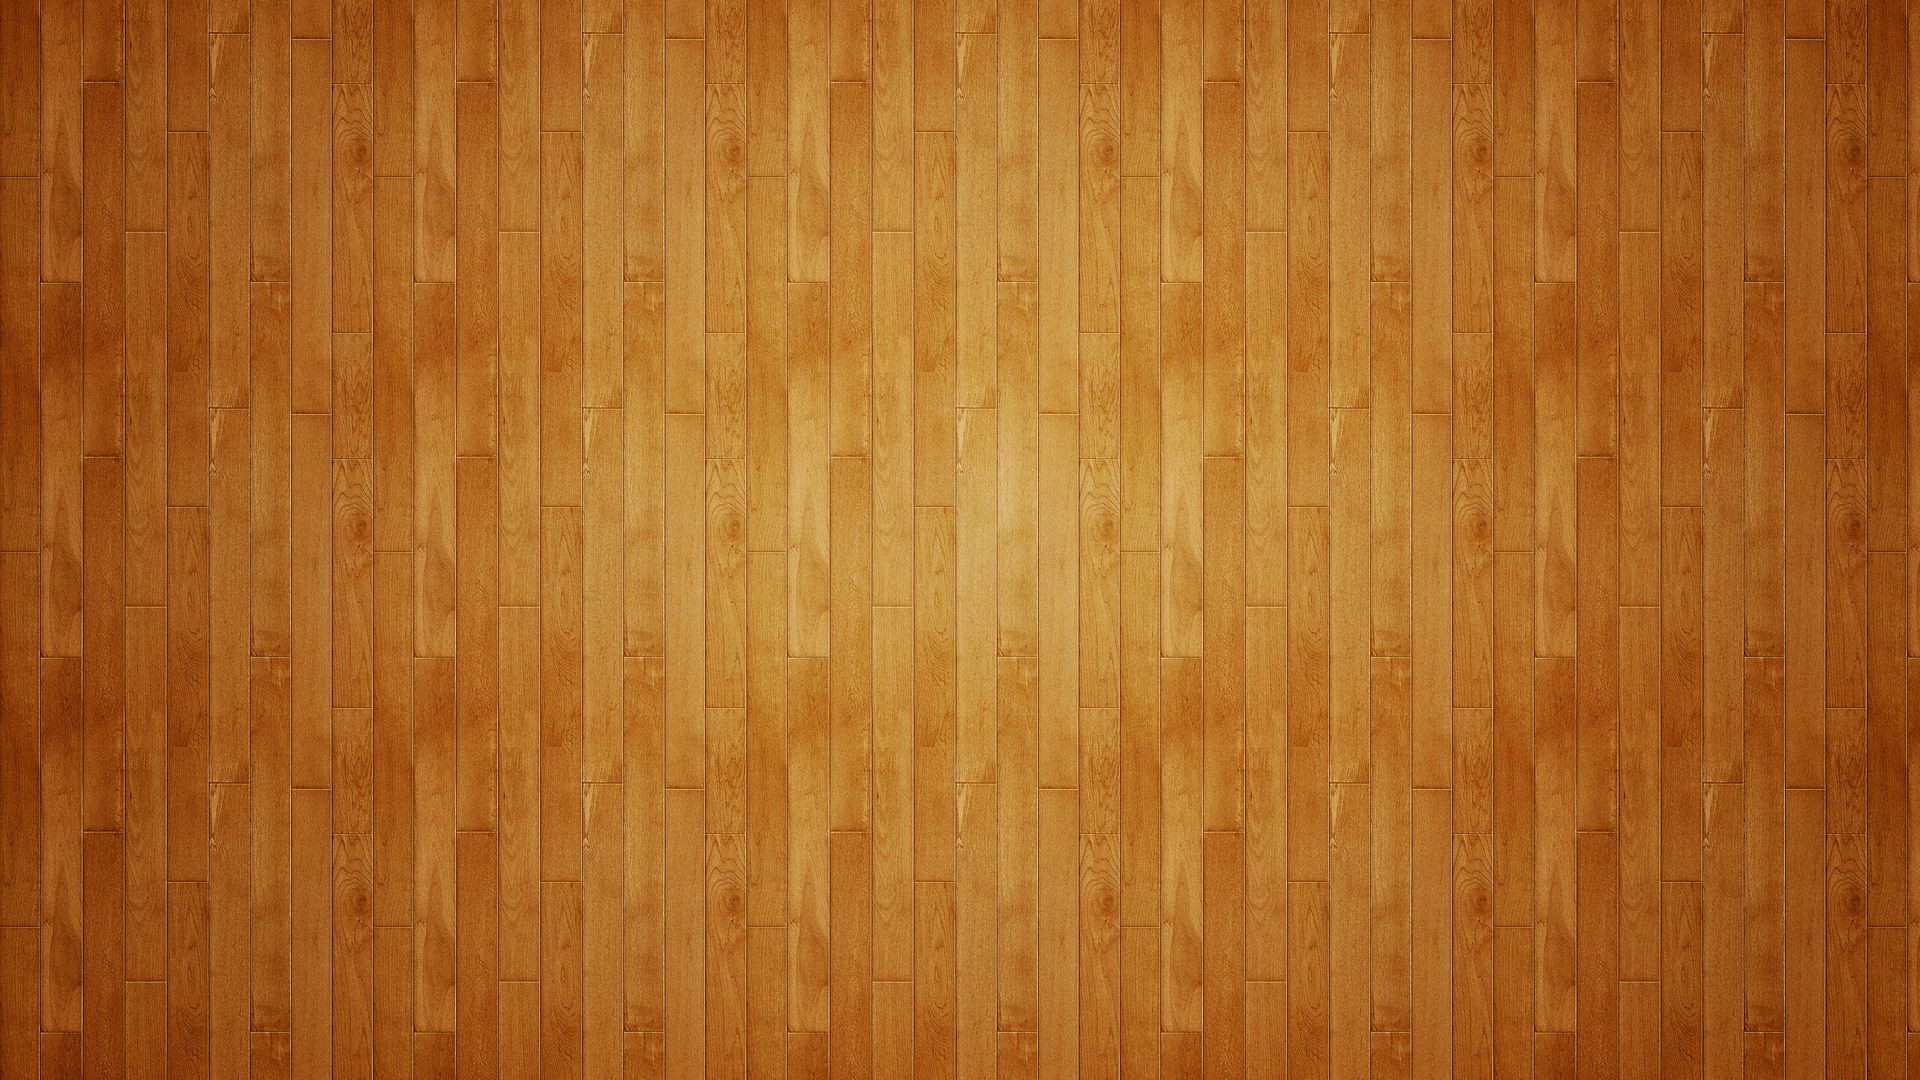 Wood Floor Wallpaper Wallpapersafari HD Wallpapers Download Free Images Wallpaper [wallpaper981.blogspot.com]